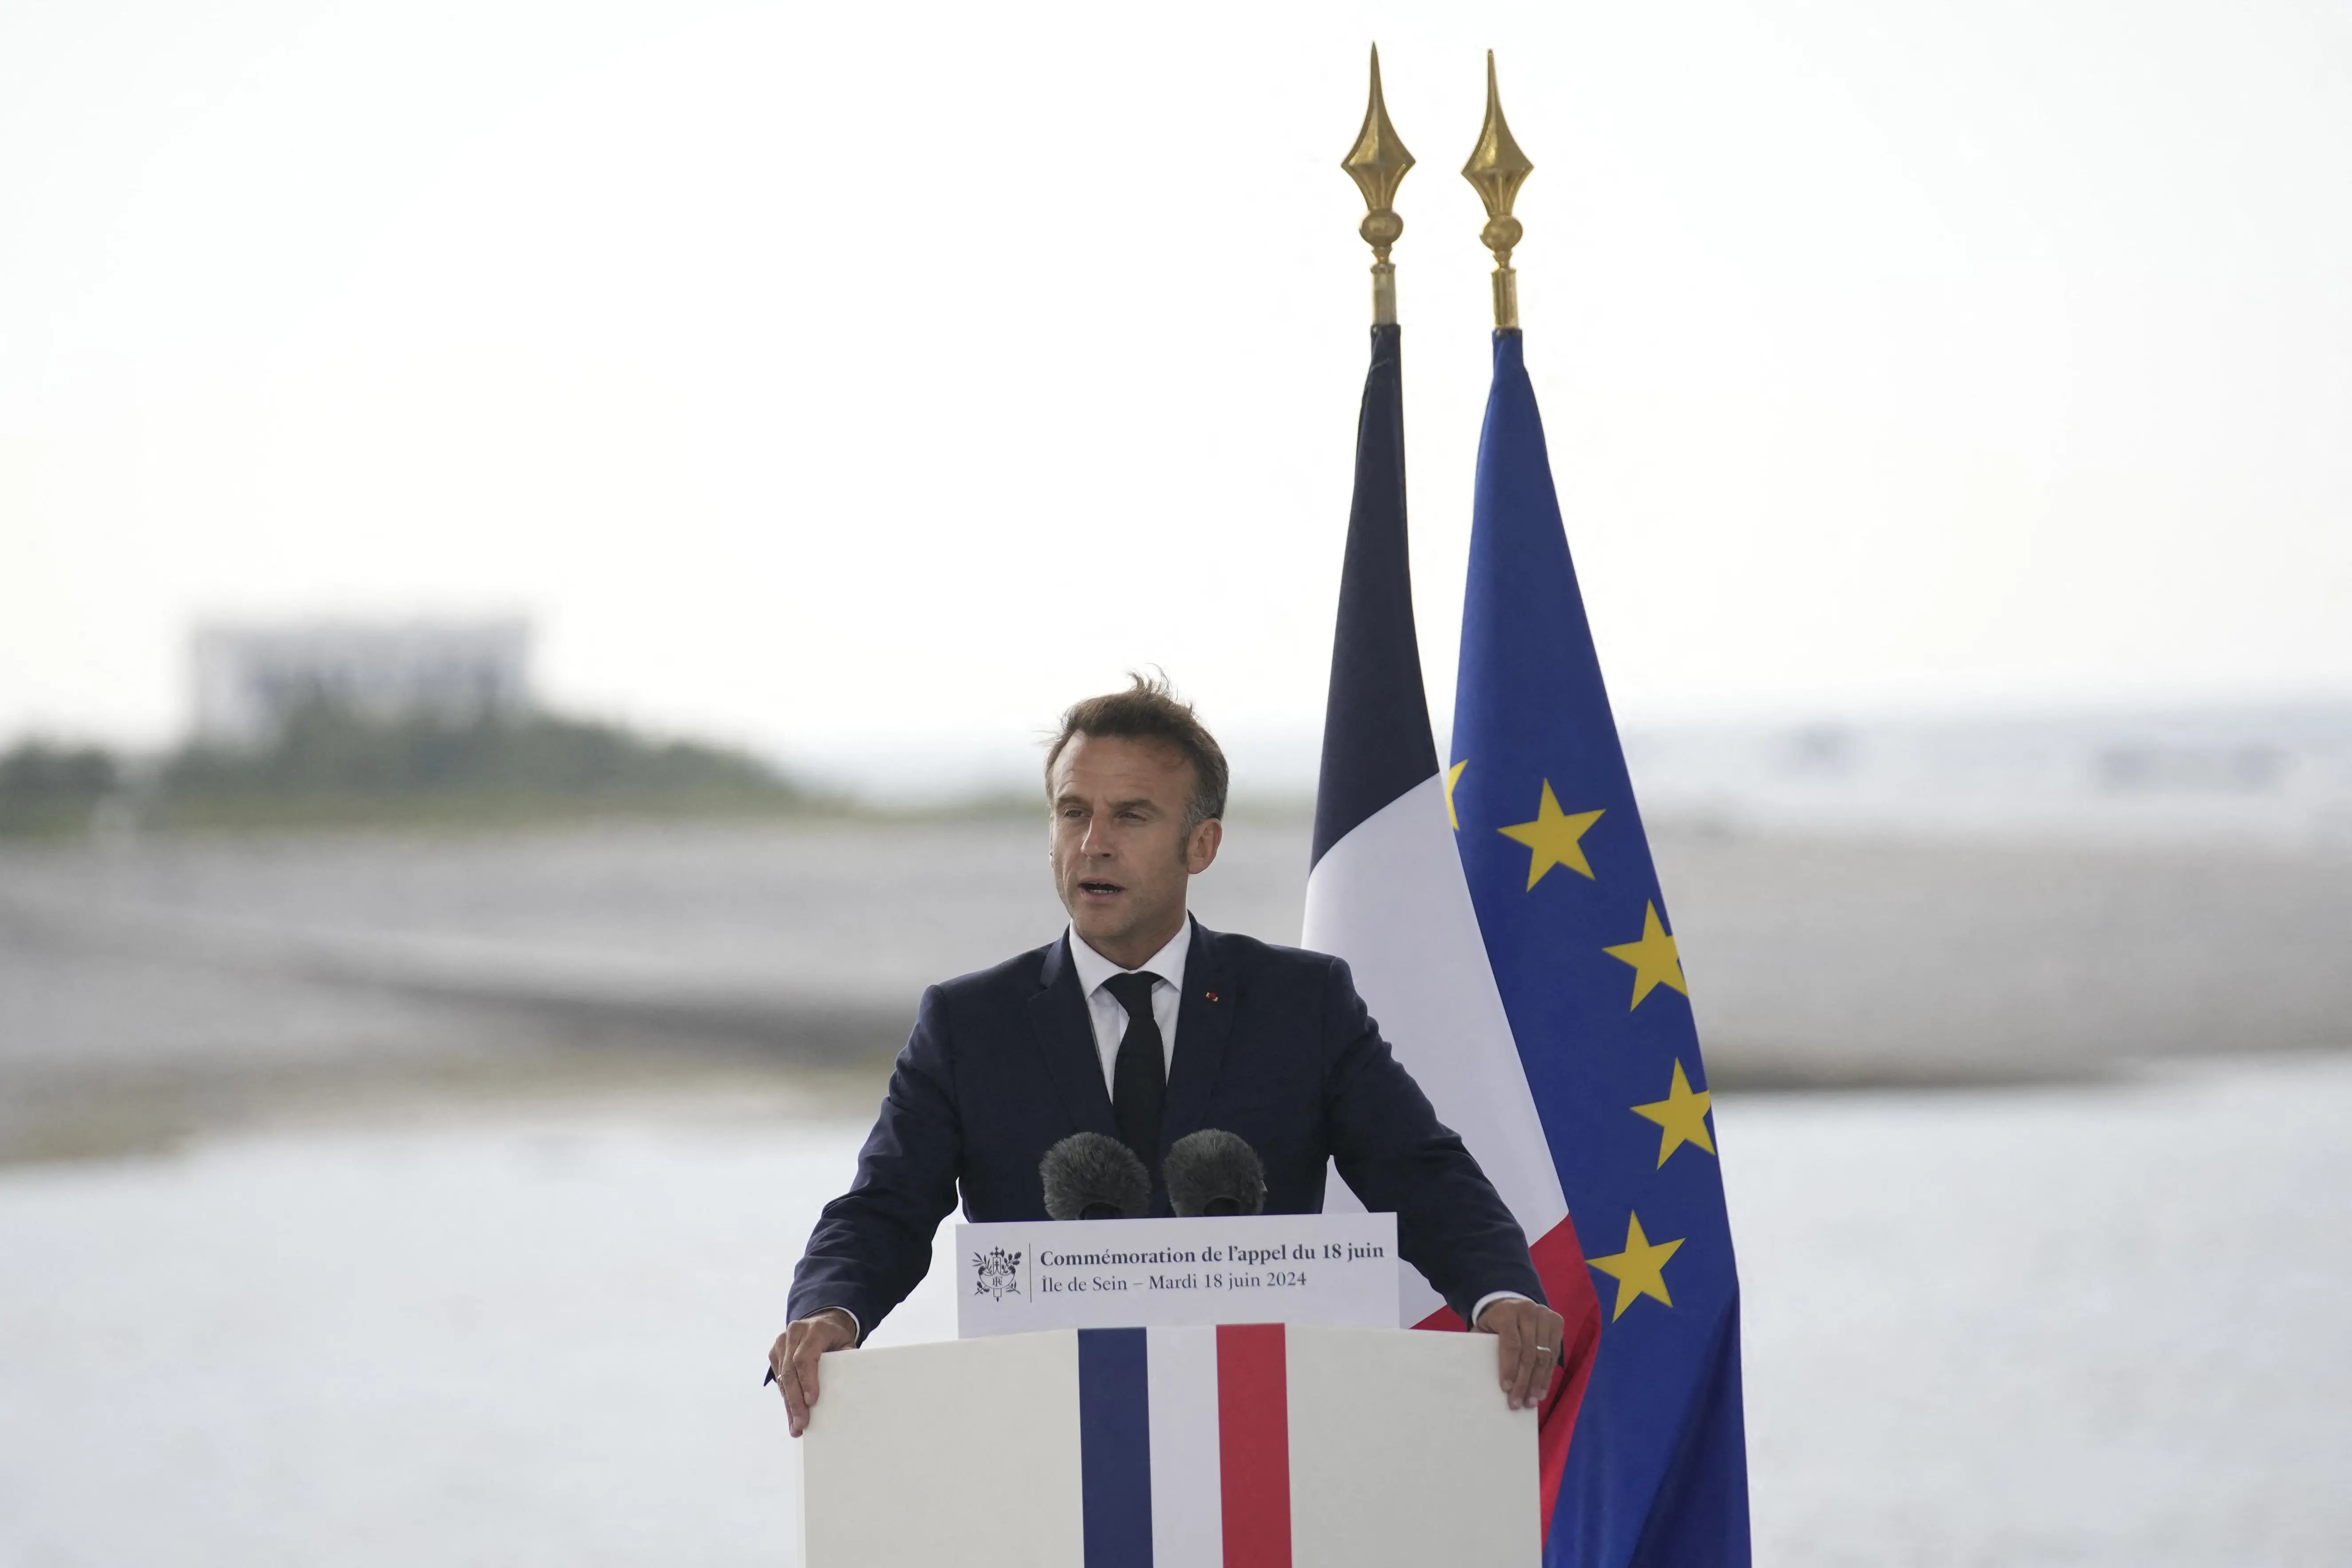 المفوضية الأوروبية توصي بإجراءات تأديبية ضد فرنسا و6 اعضاء آخرين بسبب عجز الميزانية